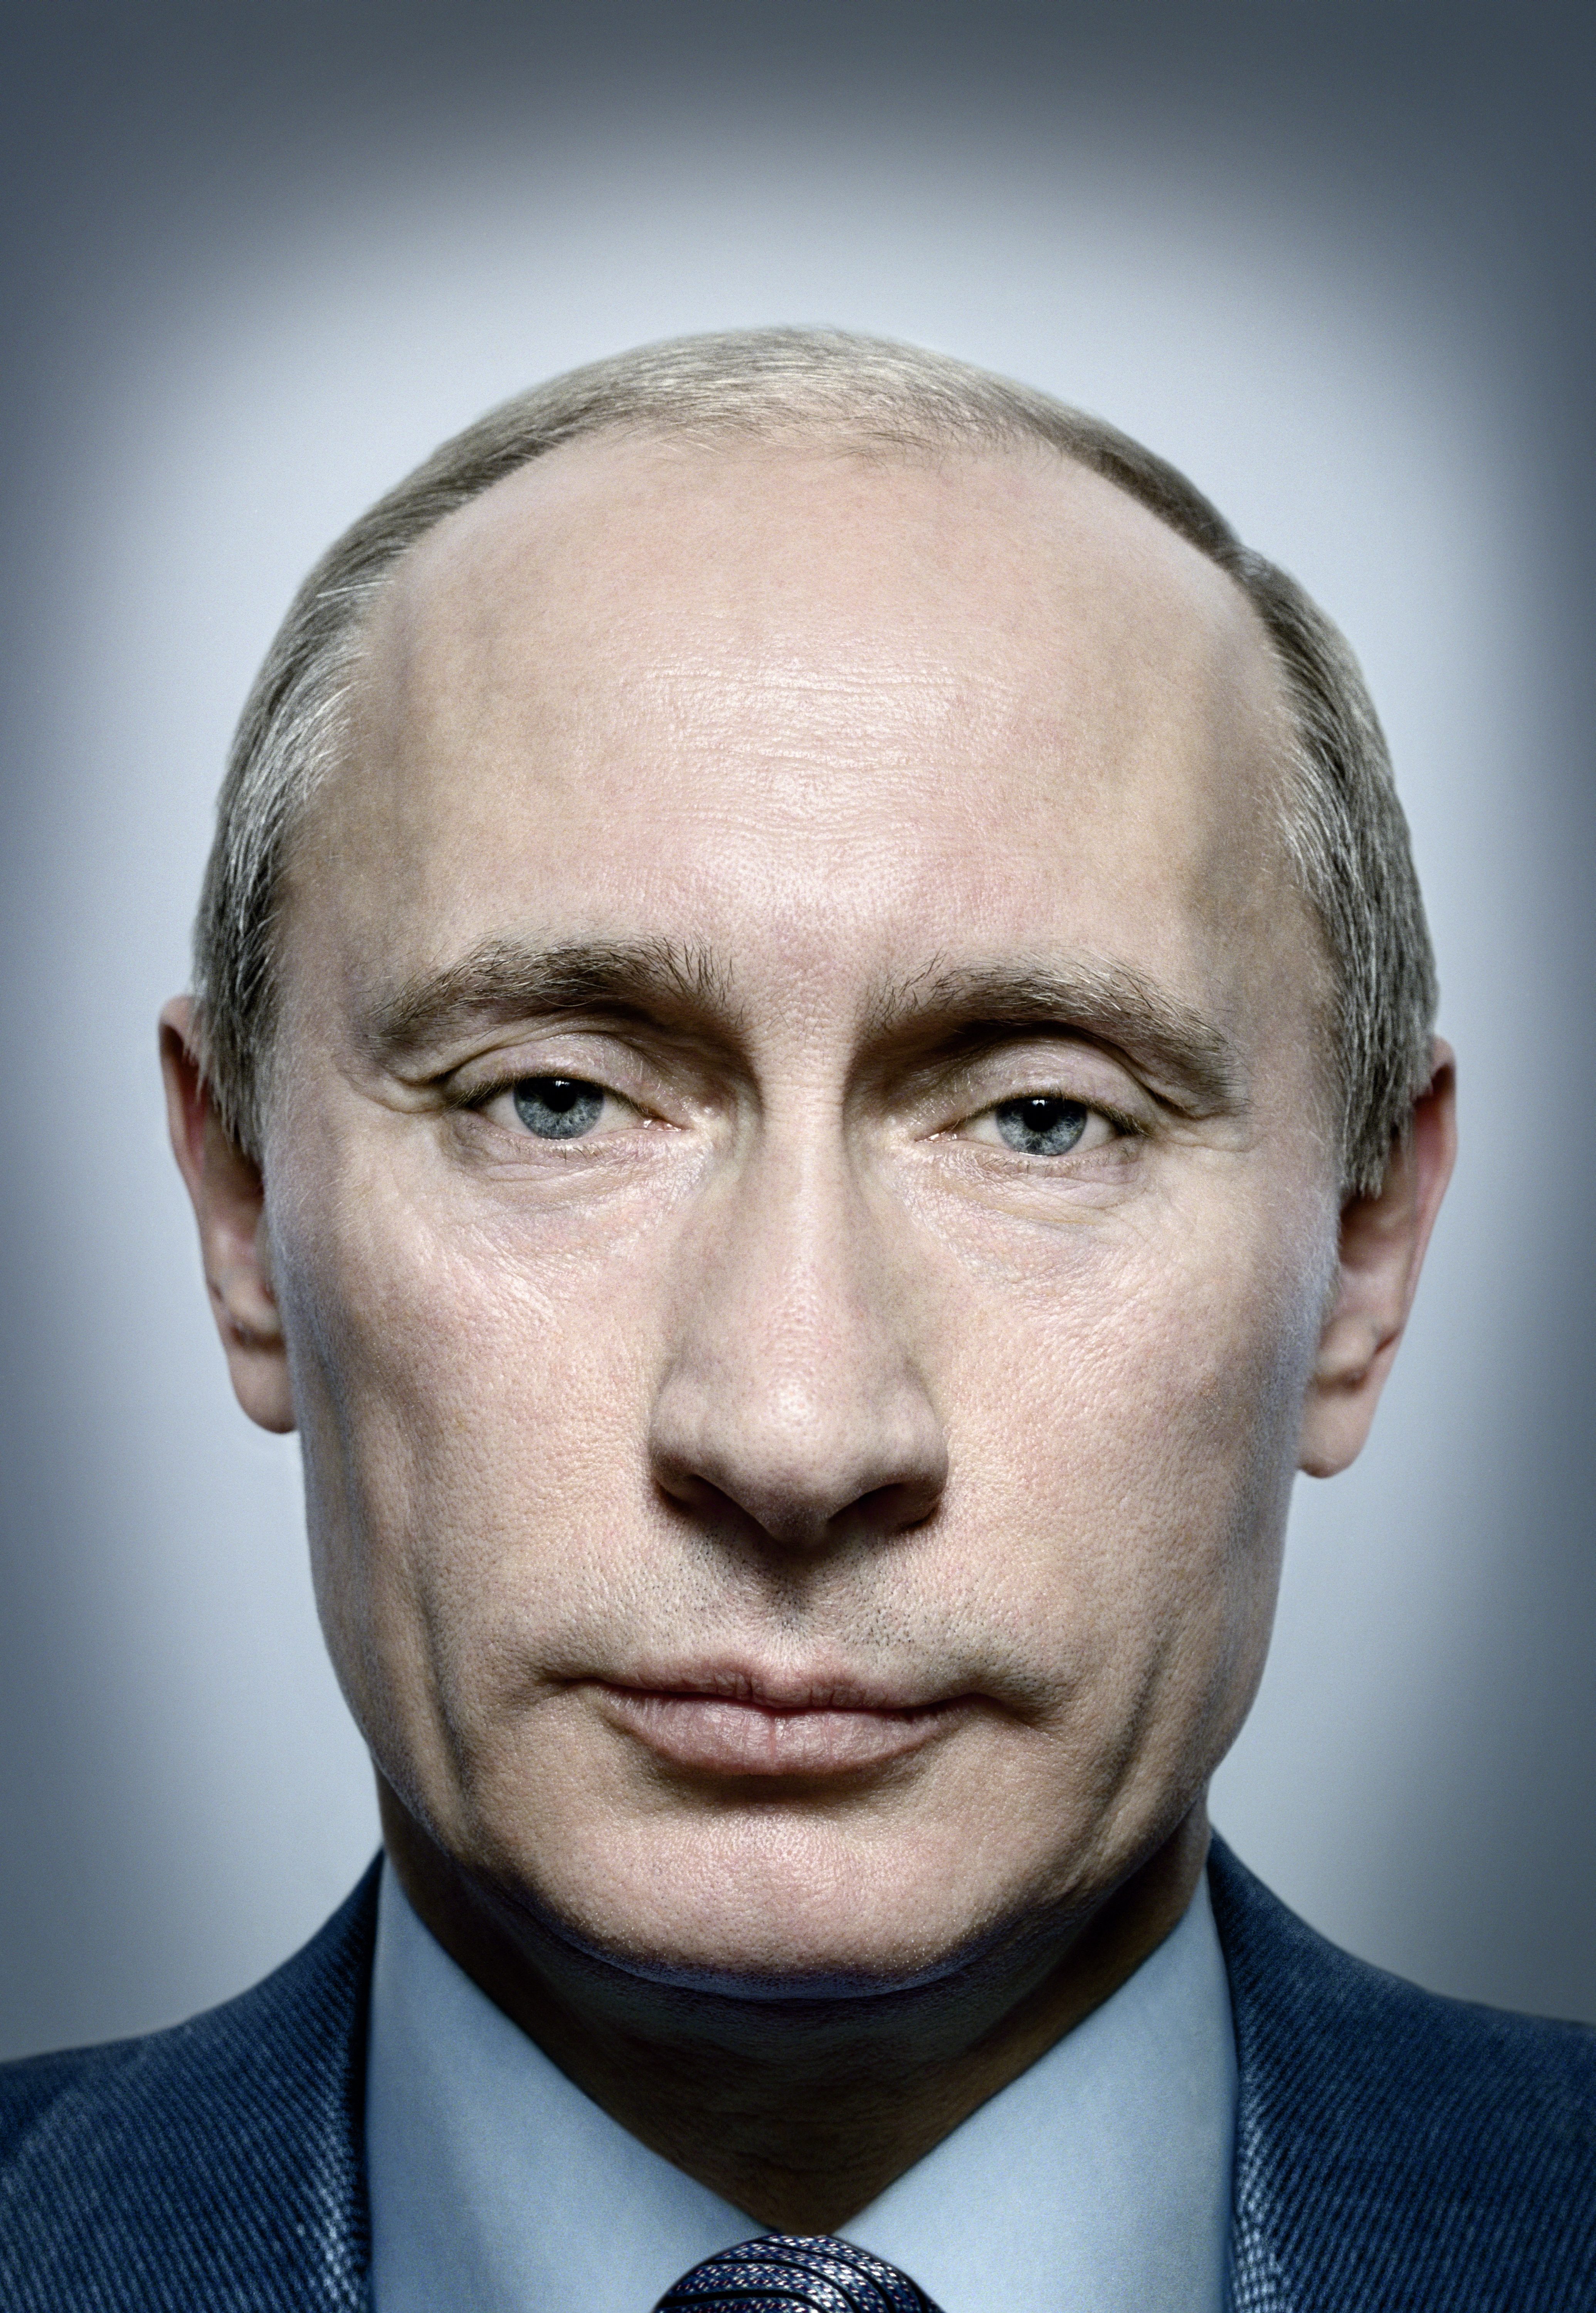 Путин Официальное Фото В Хорошем Качестве